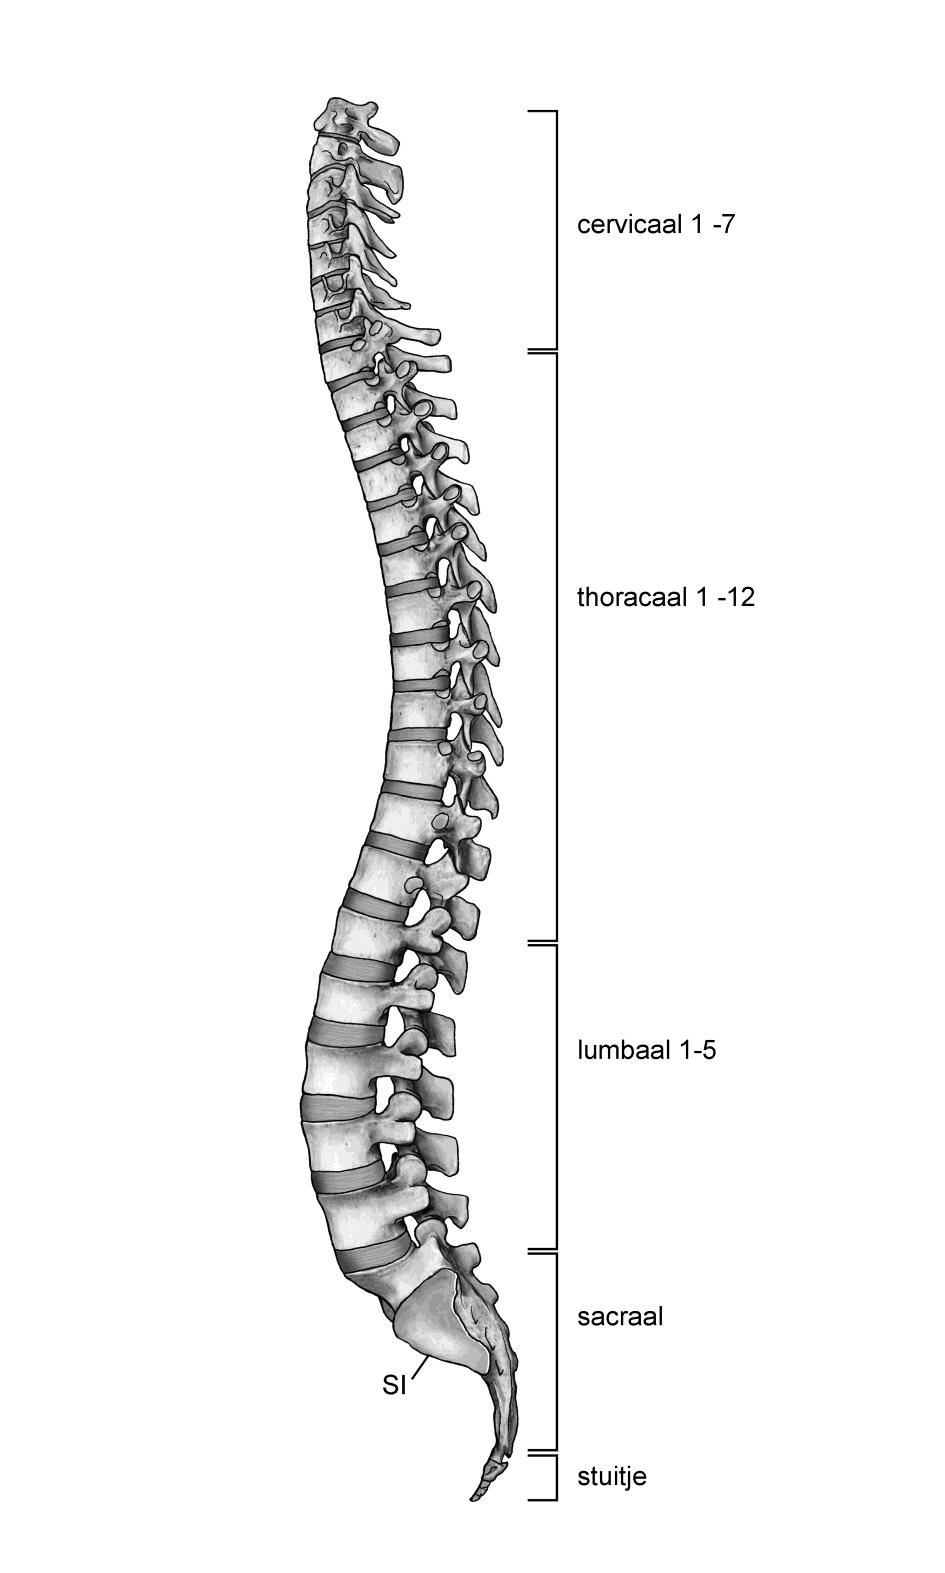 8. De rug De rug is opgebouwd uit een 7-tal nekwervels, 12 borstwervels, 5 lendewervels, 5 heiligbeenwervels en een staart.